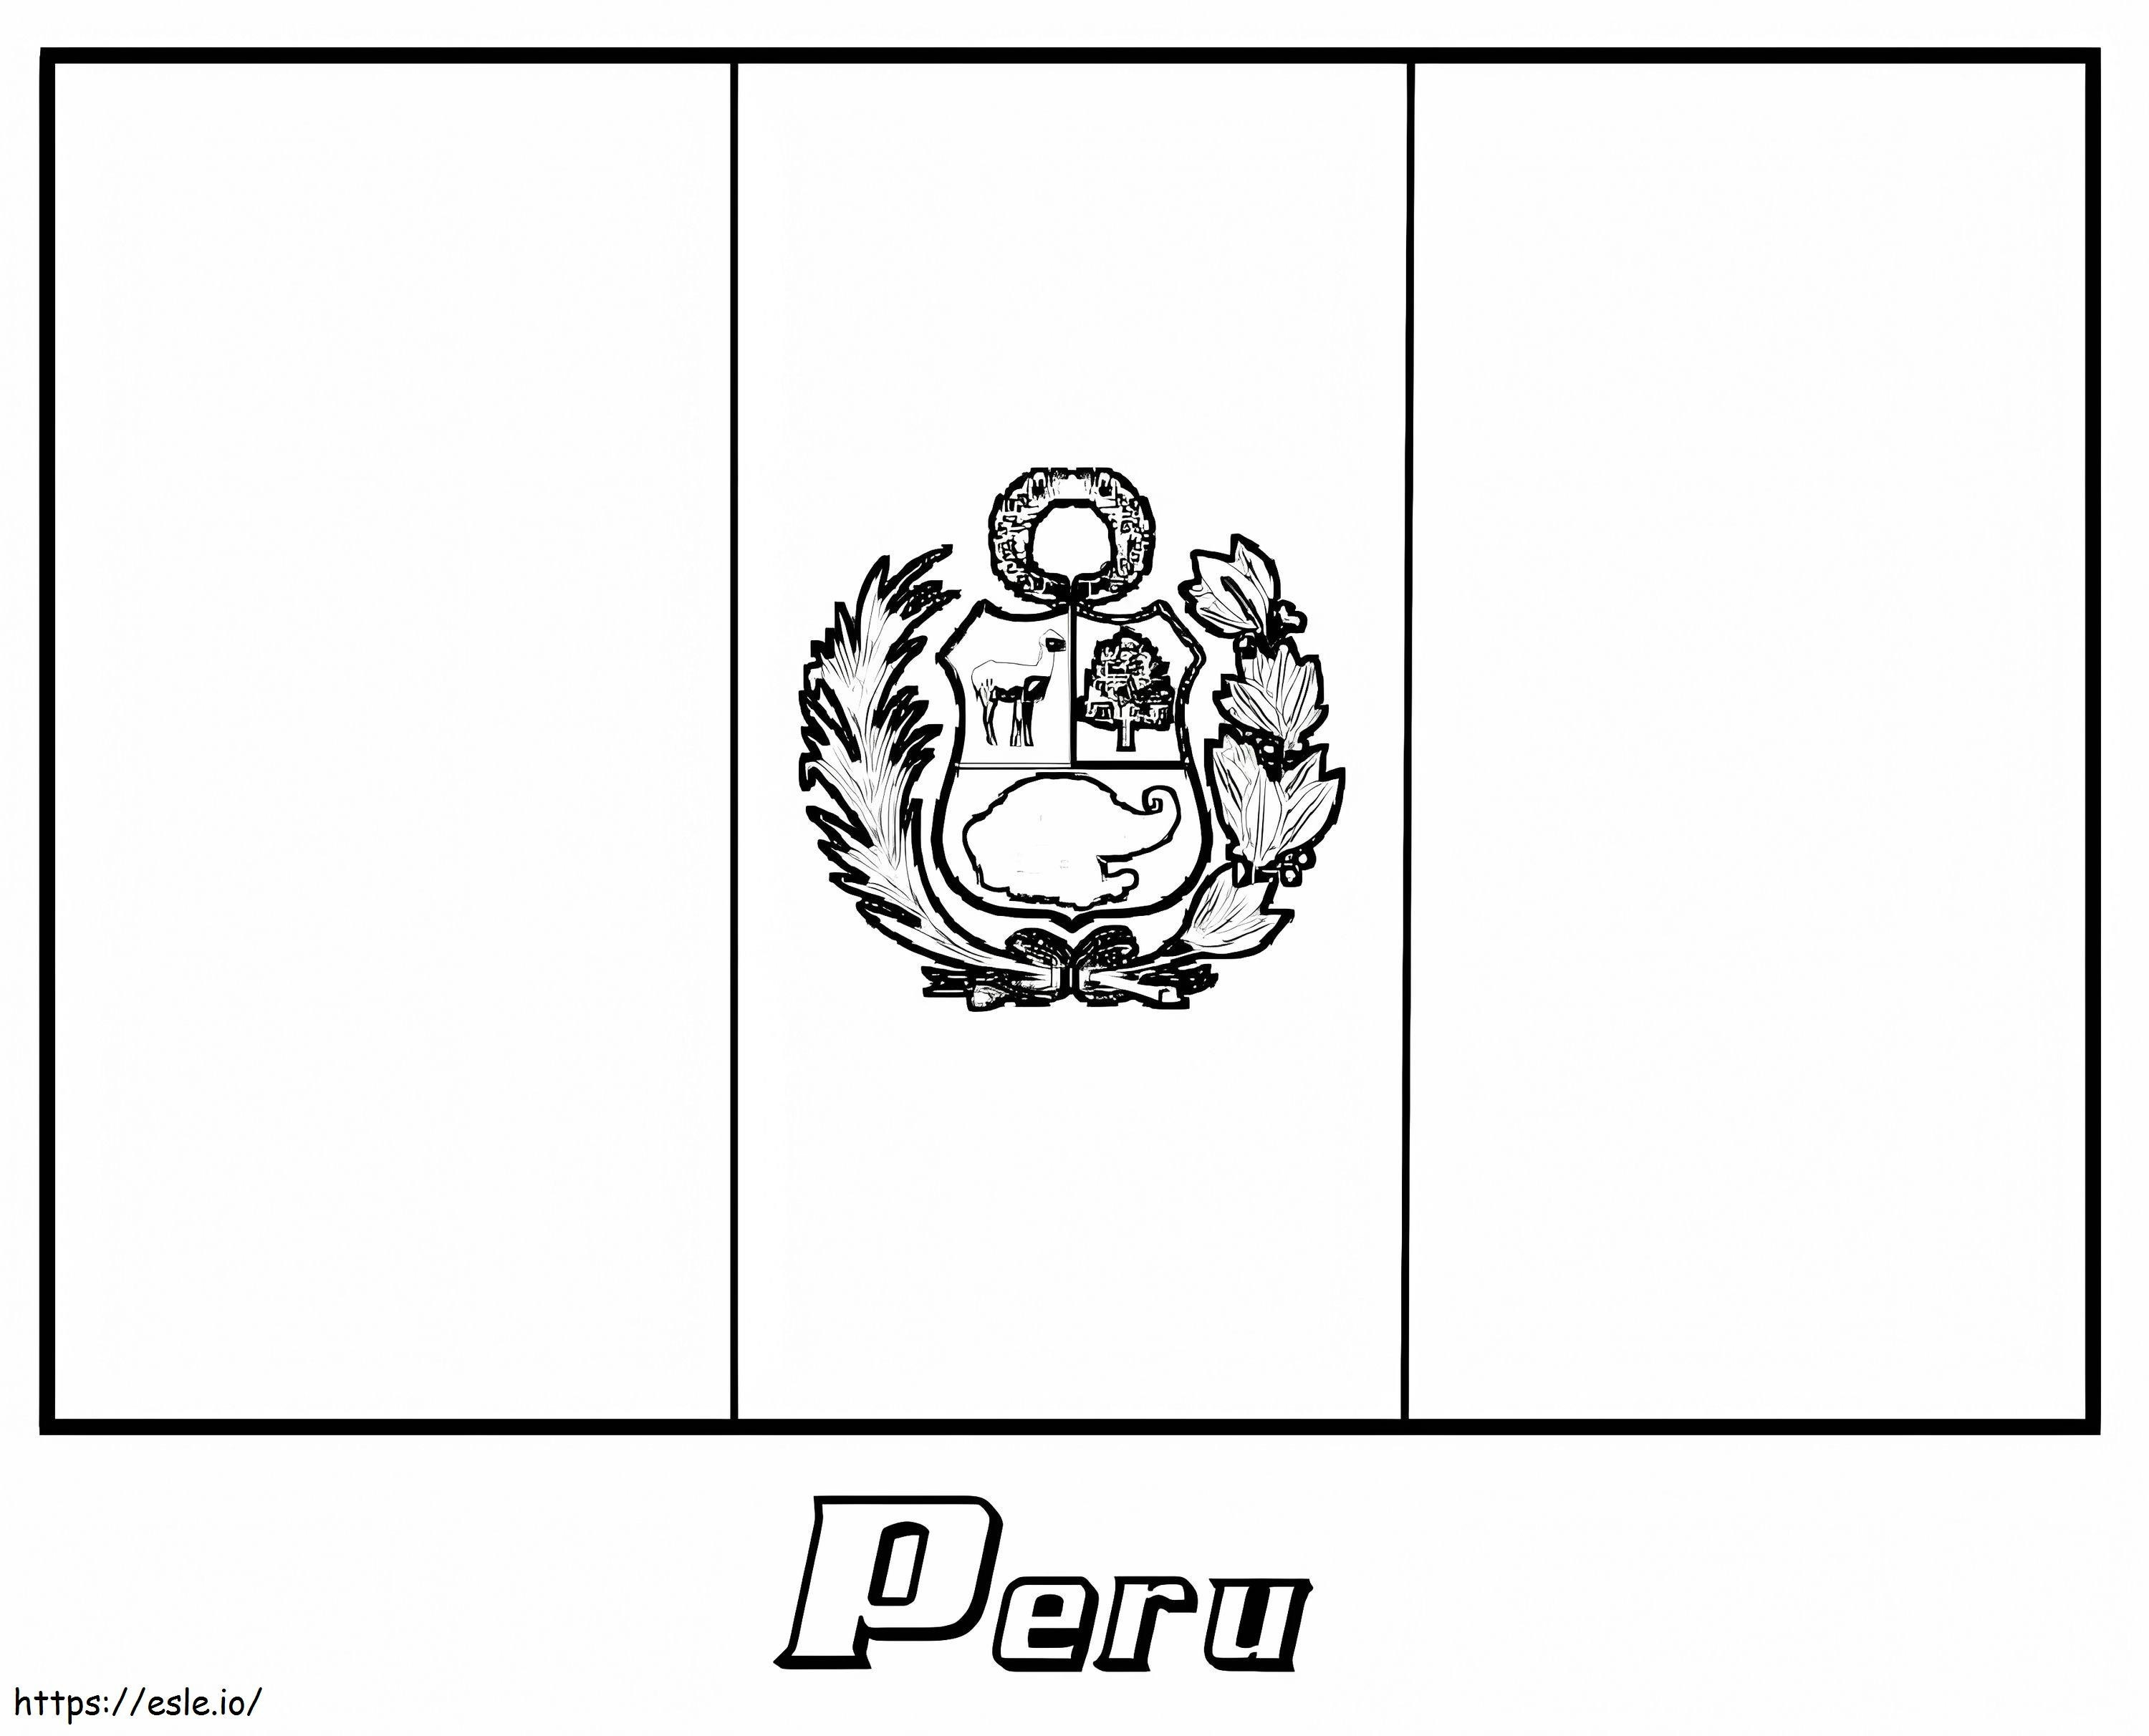 Peru zászlaja kifestő